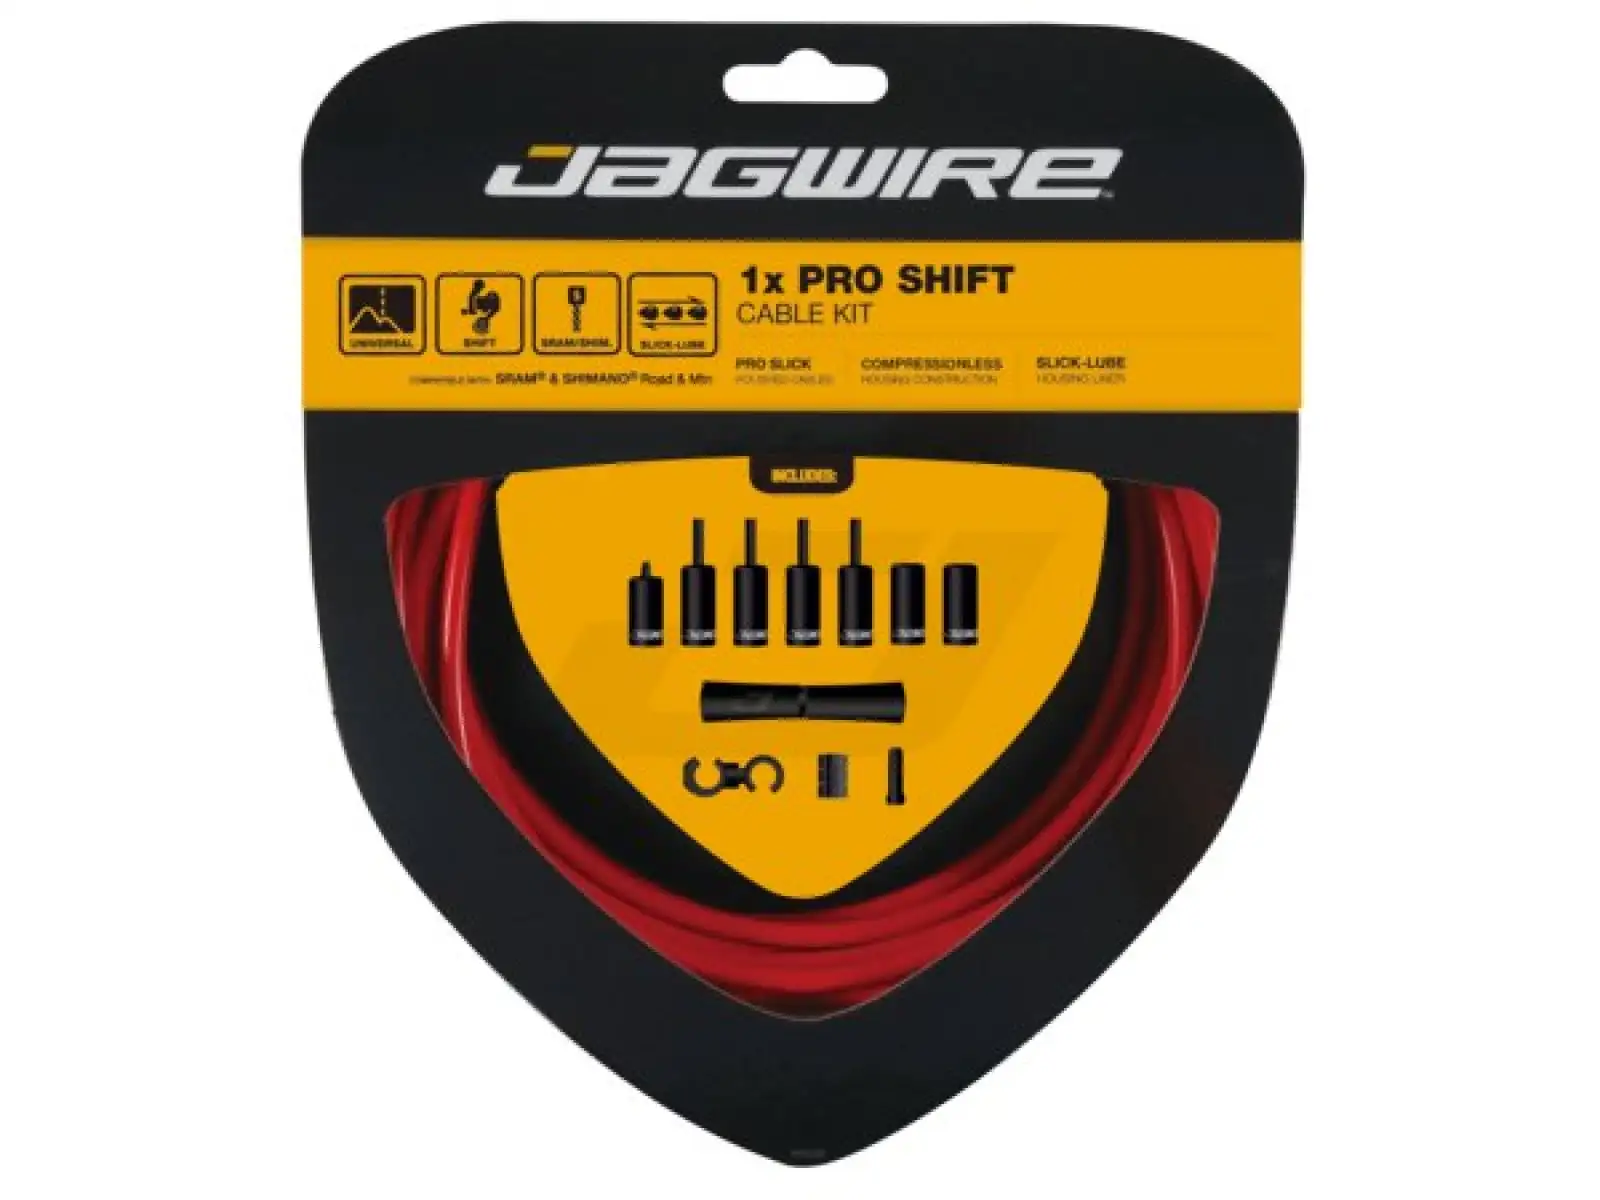 Jagwire PCK554 1x Pro Shift Kit, červená